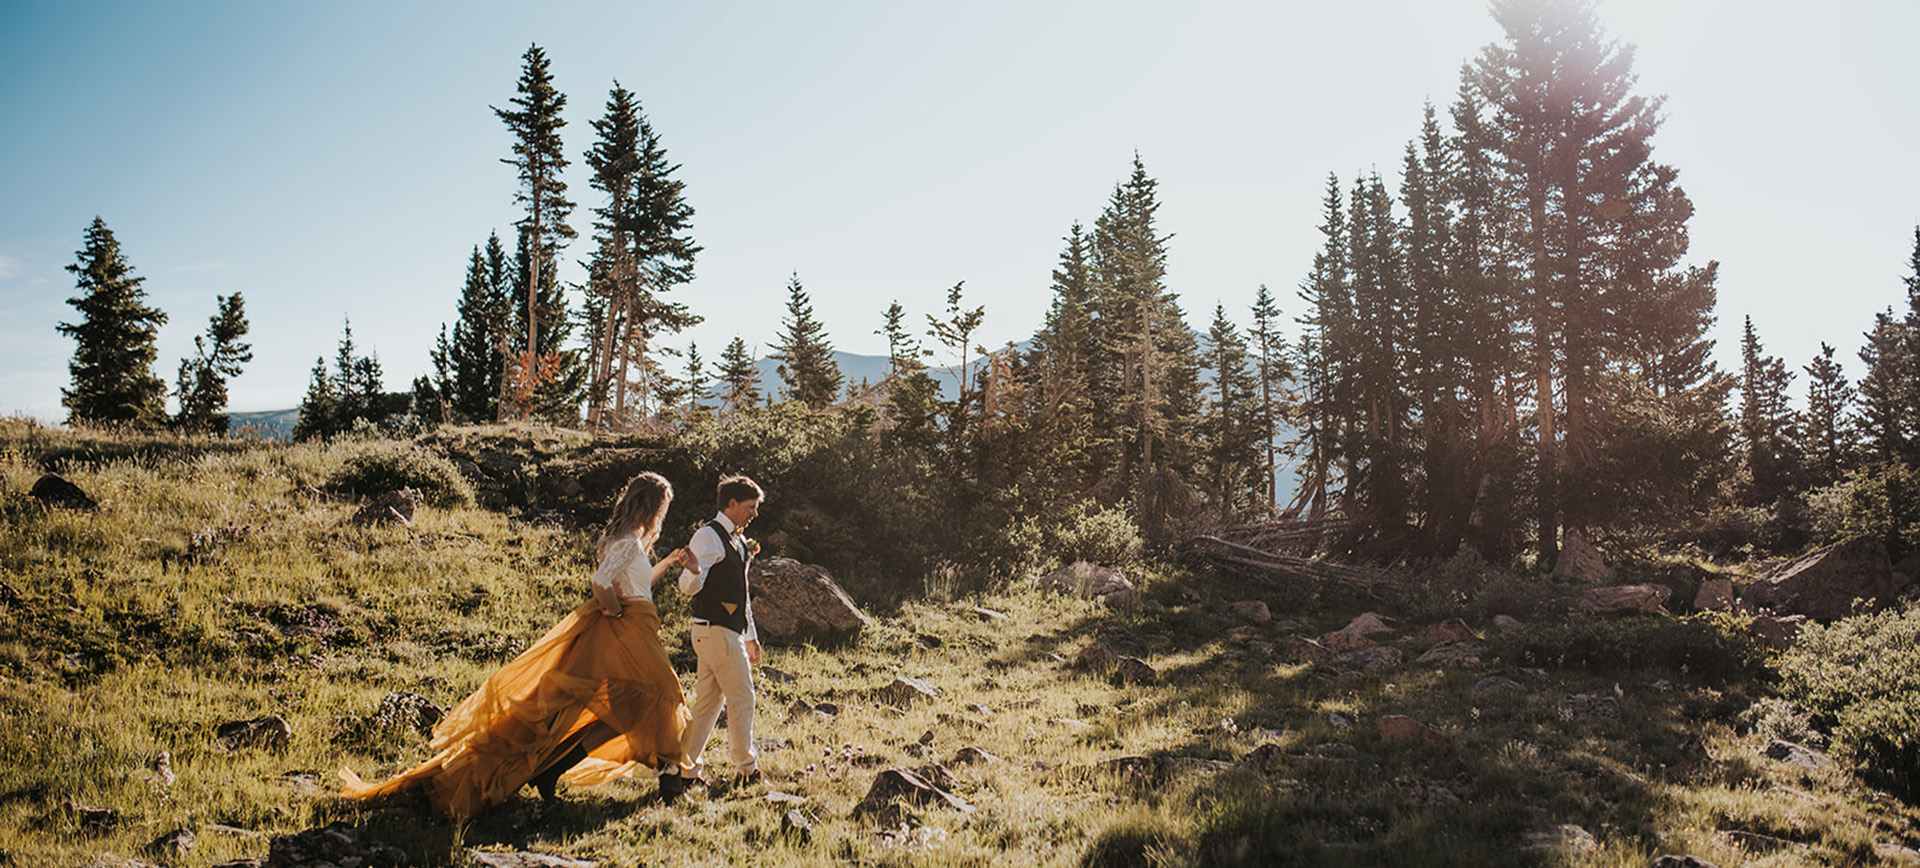 colorado adventure wedding elopement at alpine lake near bella vista